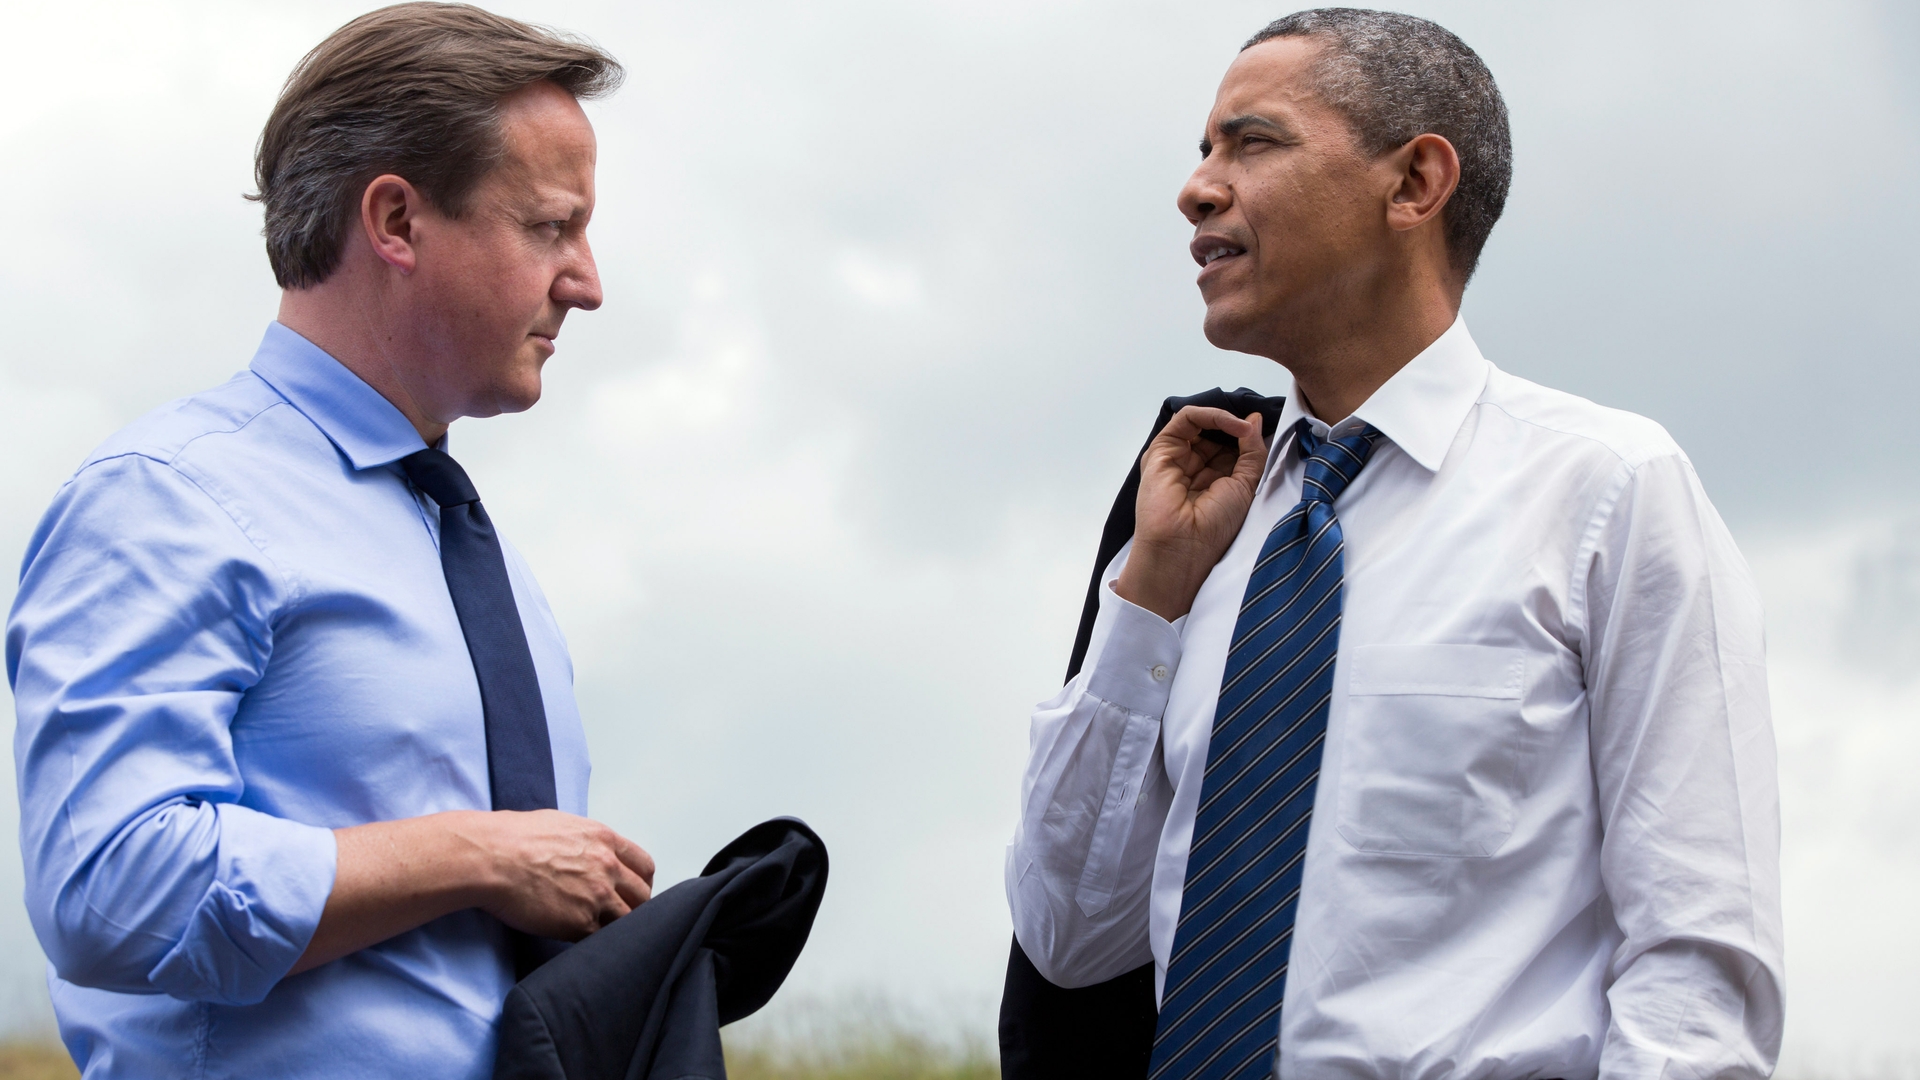 David_Cameron_and_Barack_Obama_at_G8_summit_2013